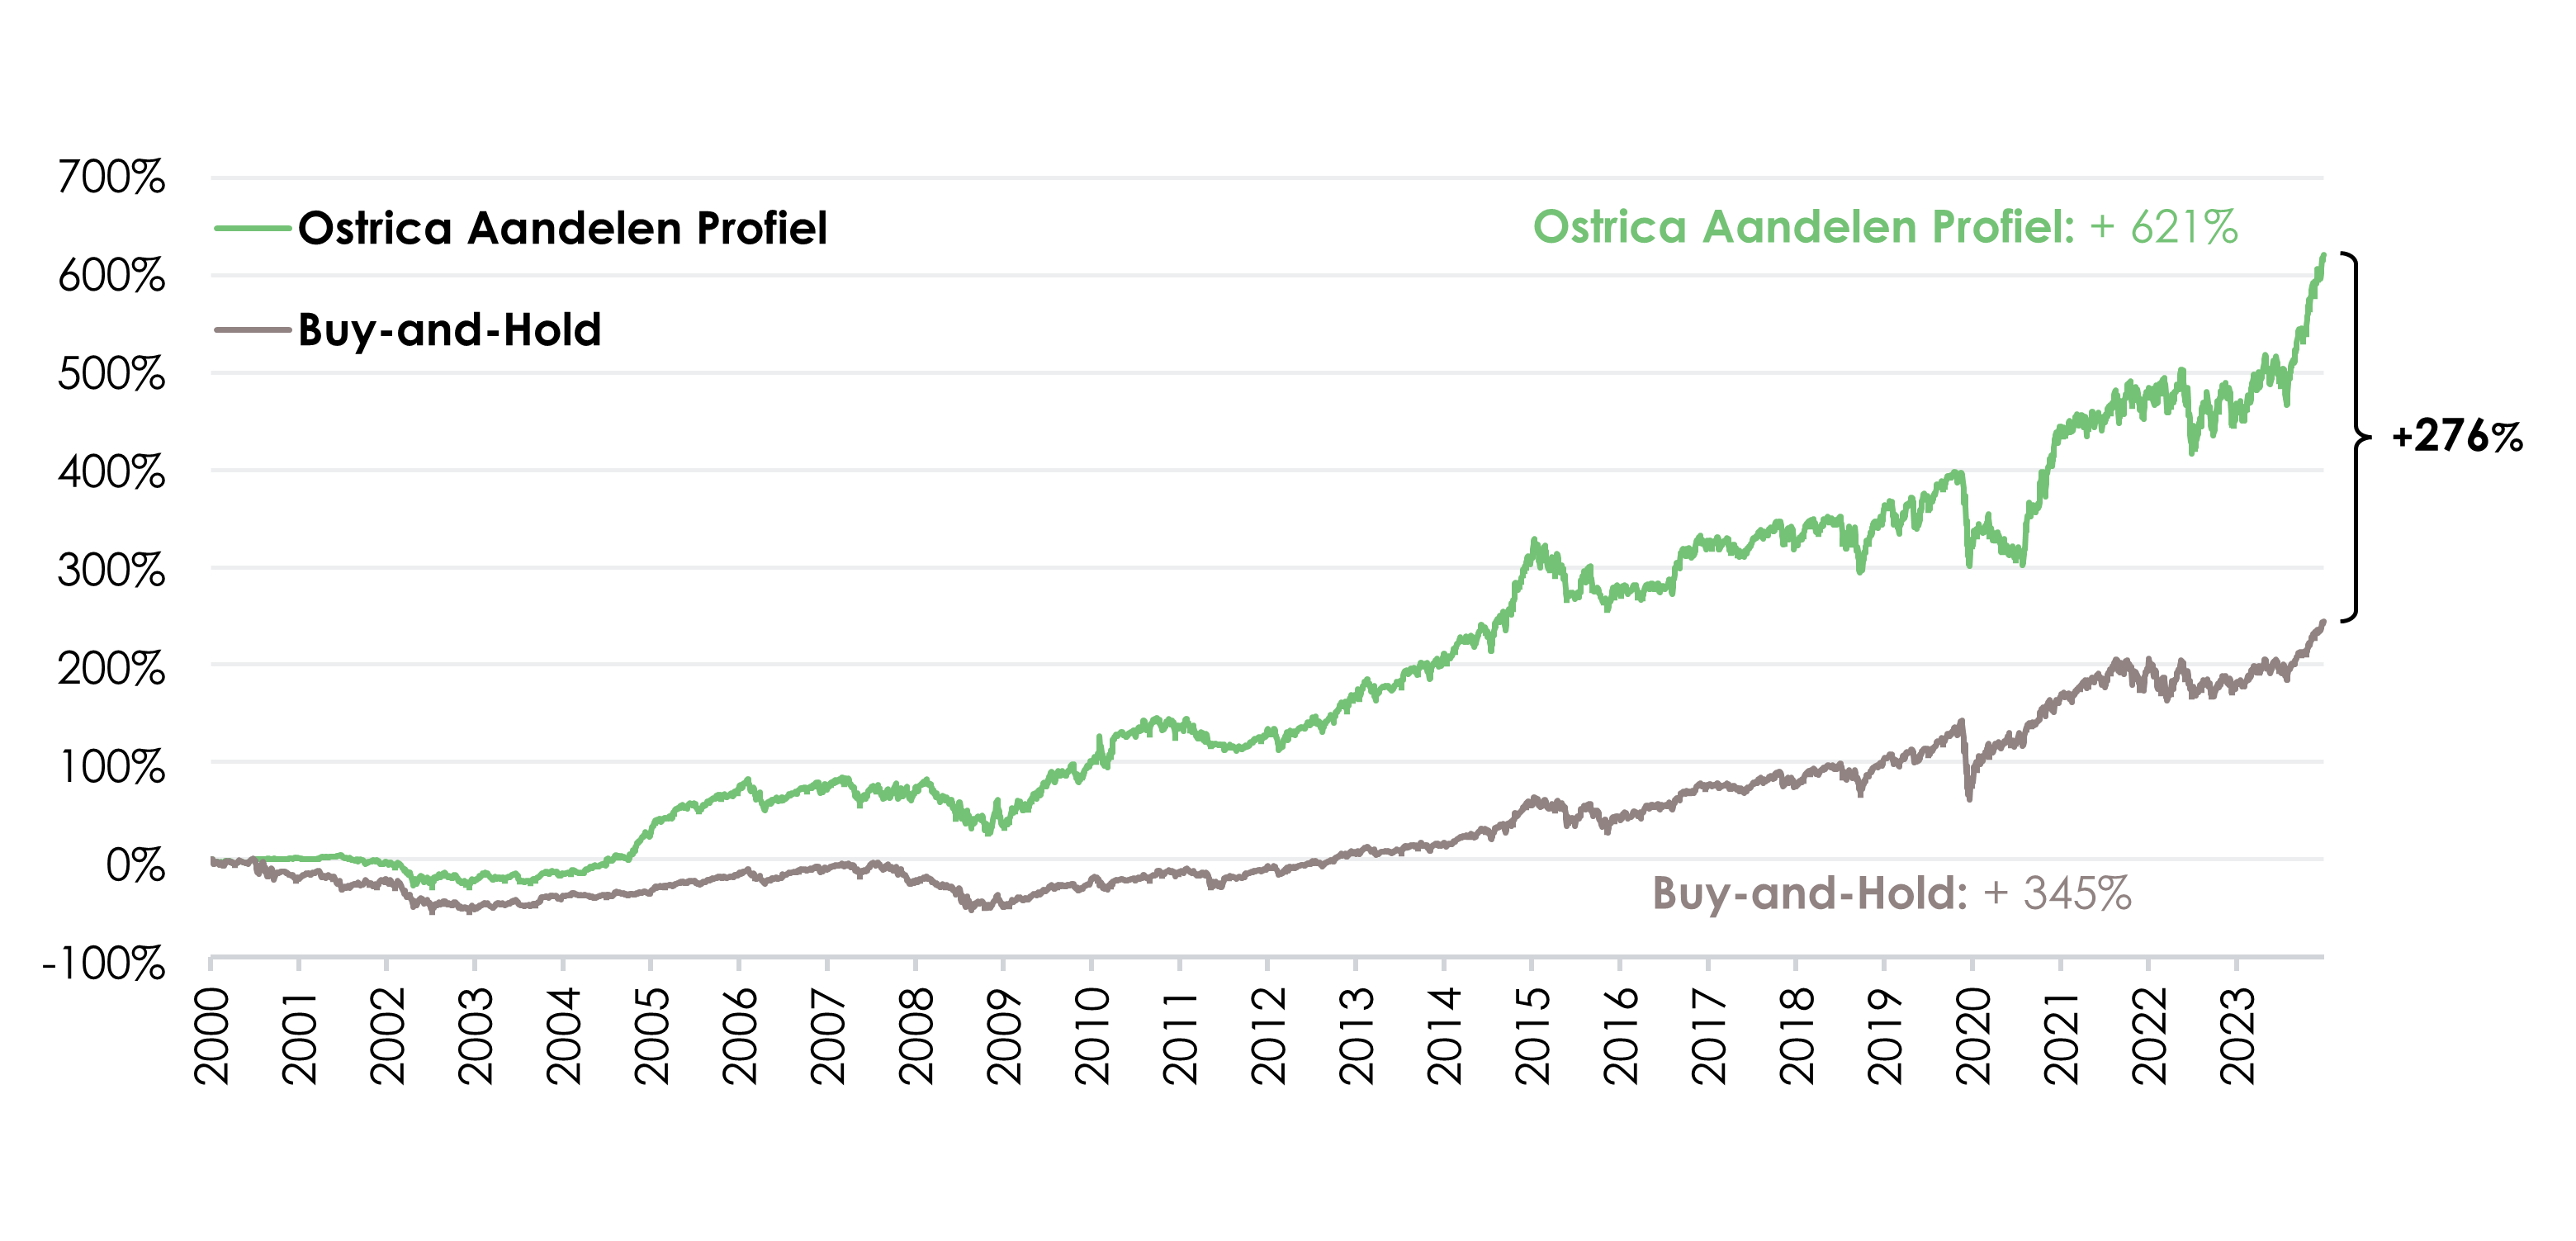 Beleggen in aandelen of vastgoed: rendement Ostrica Aandelen Profiel sinds 2000 | Ostrica Vermogensbeheer